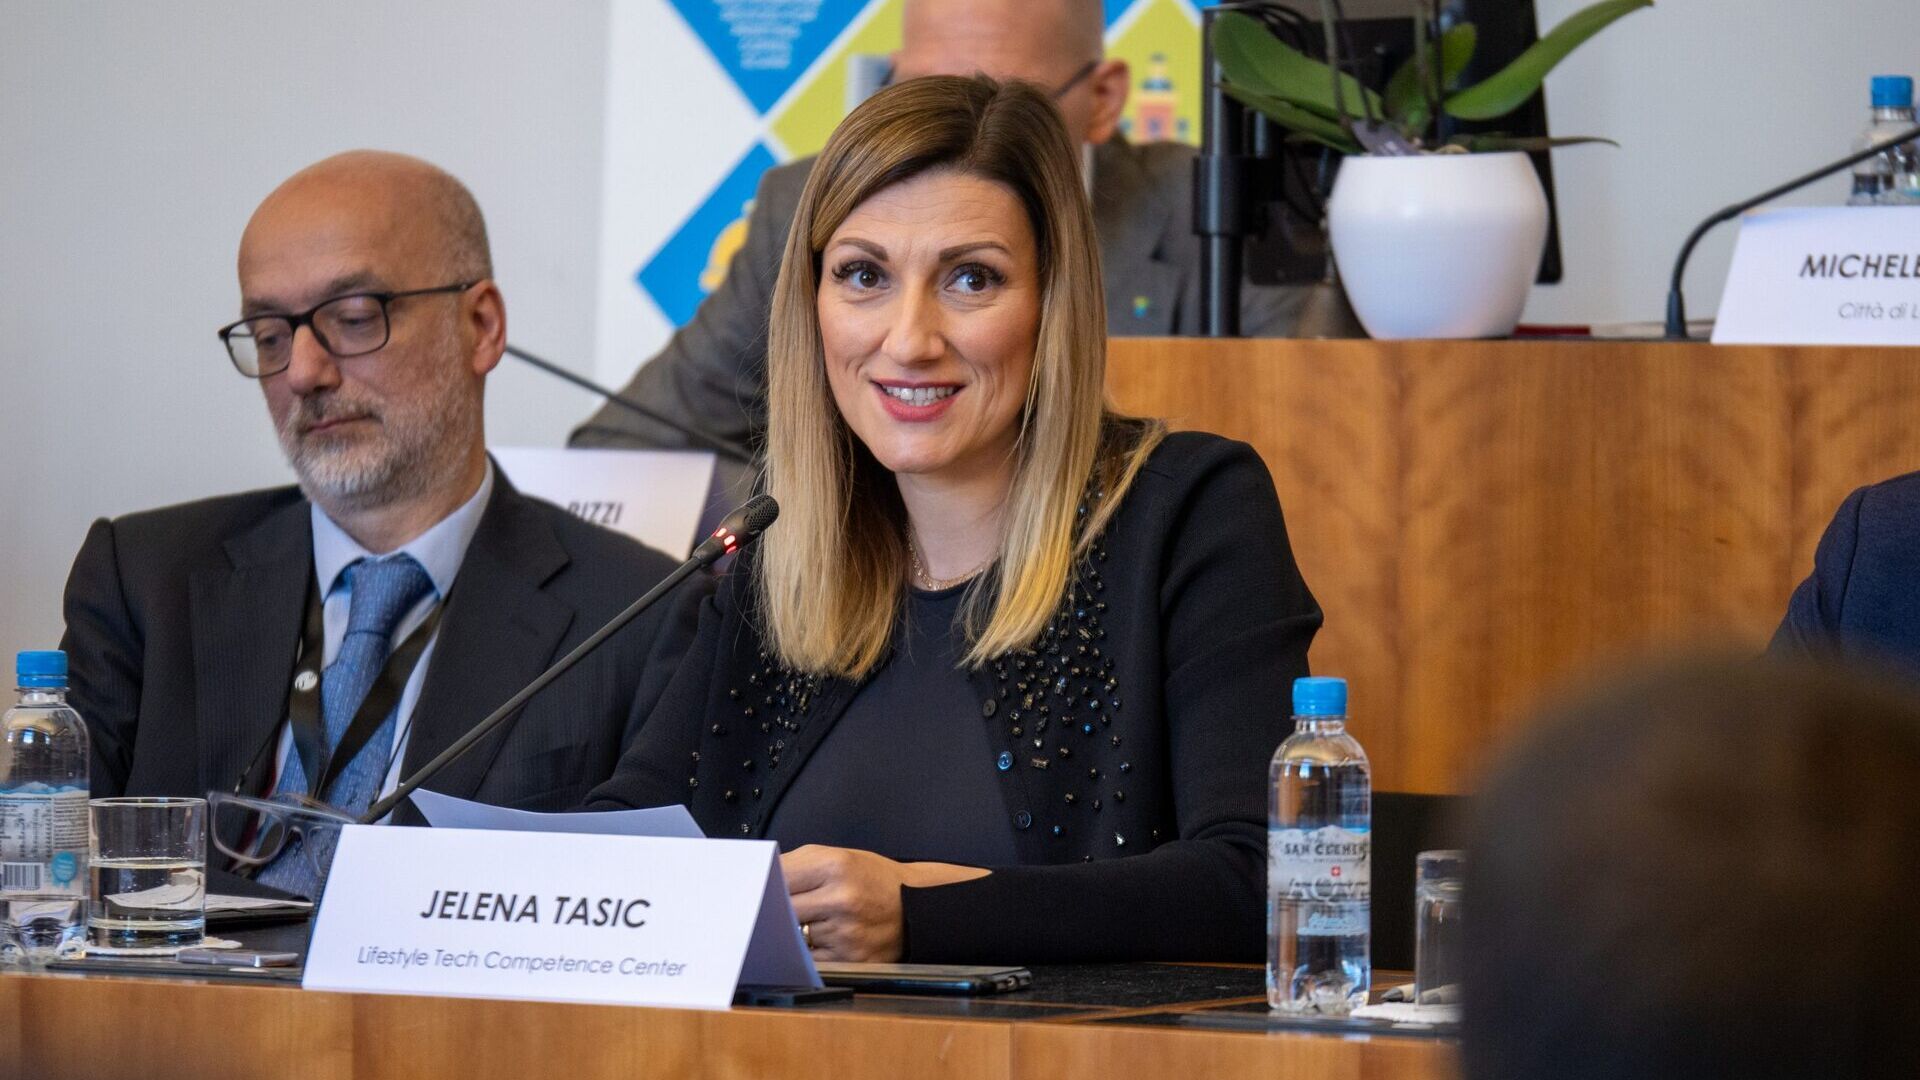 LTCC: Jelena Tašić Pizzolato adalah CEO Asosiasi Pusat Kompetensi Teknologi Gaya Hidup